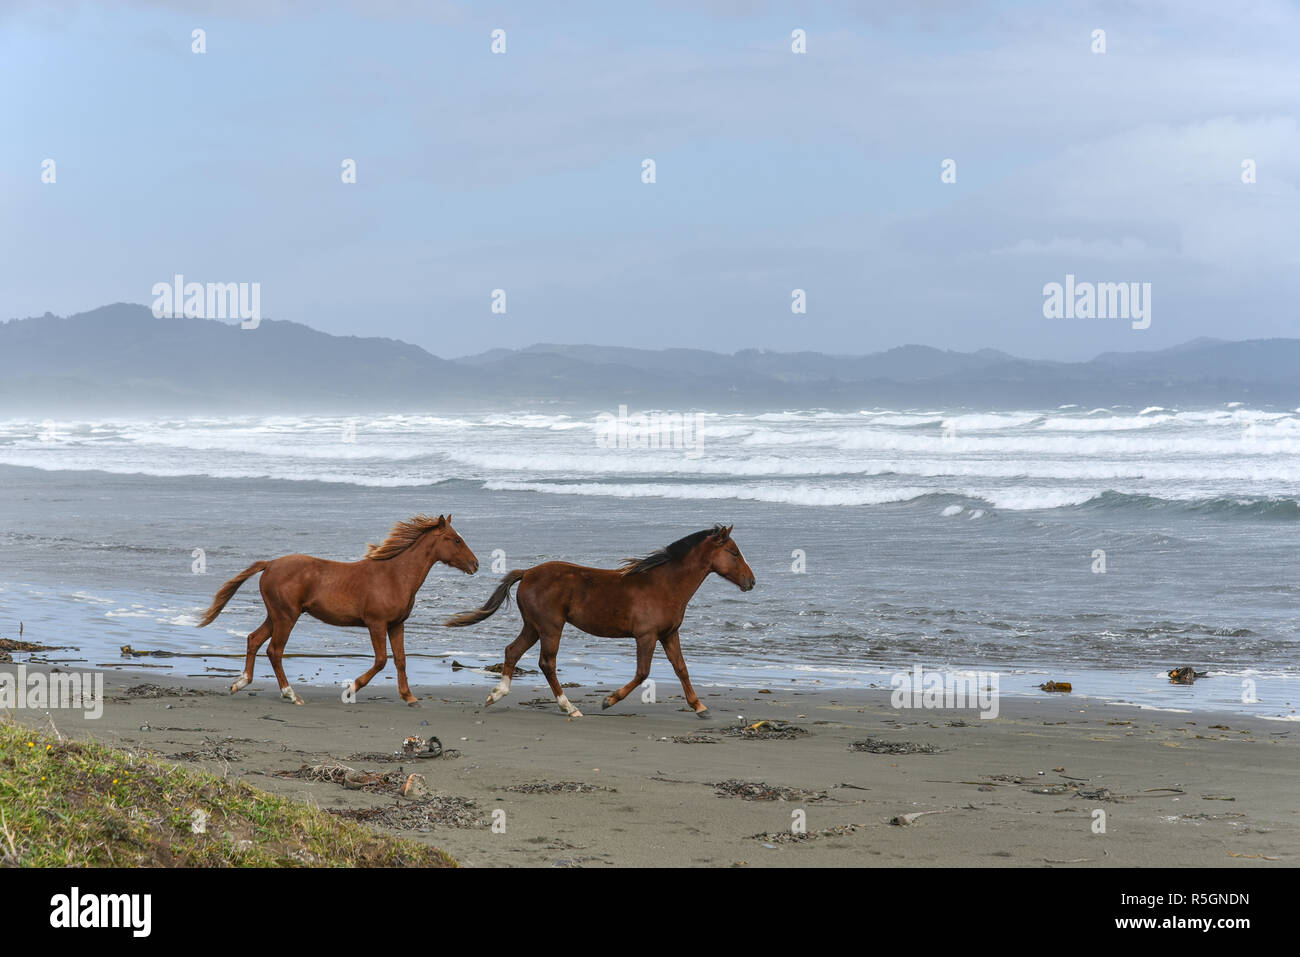 Los caballos en la playa, el Pacífico, Chiloé, Chile Foto de stock